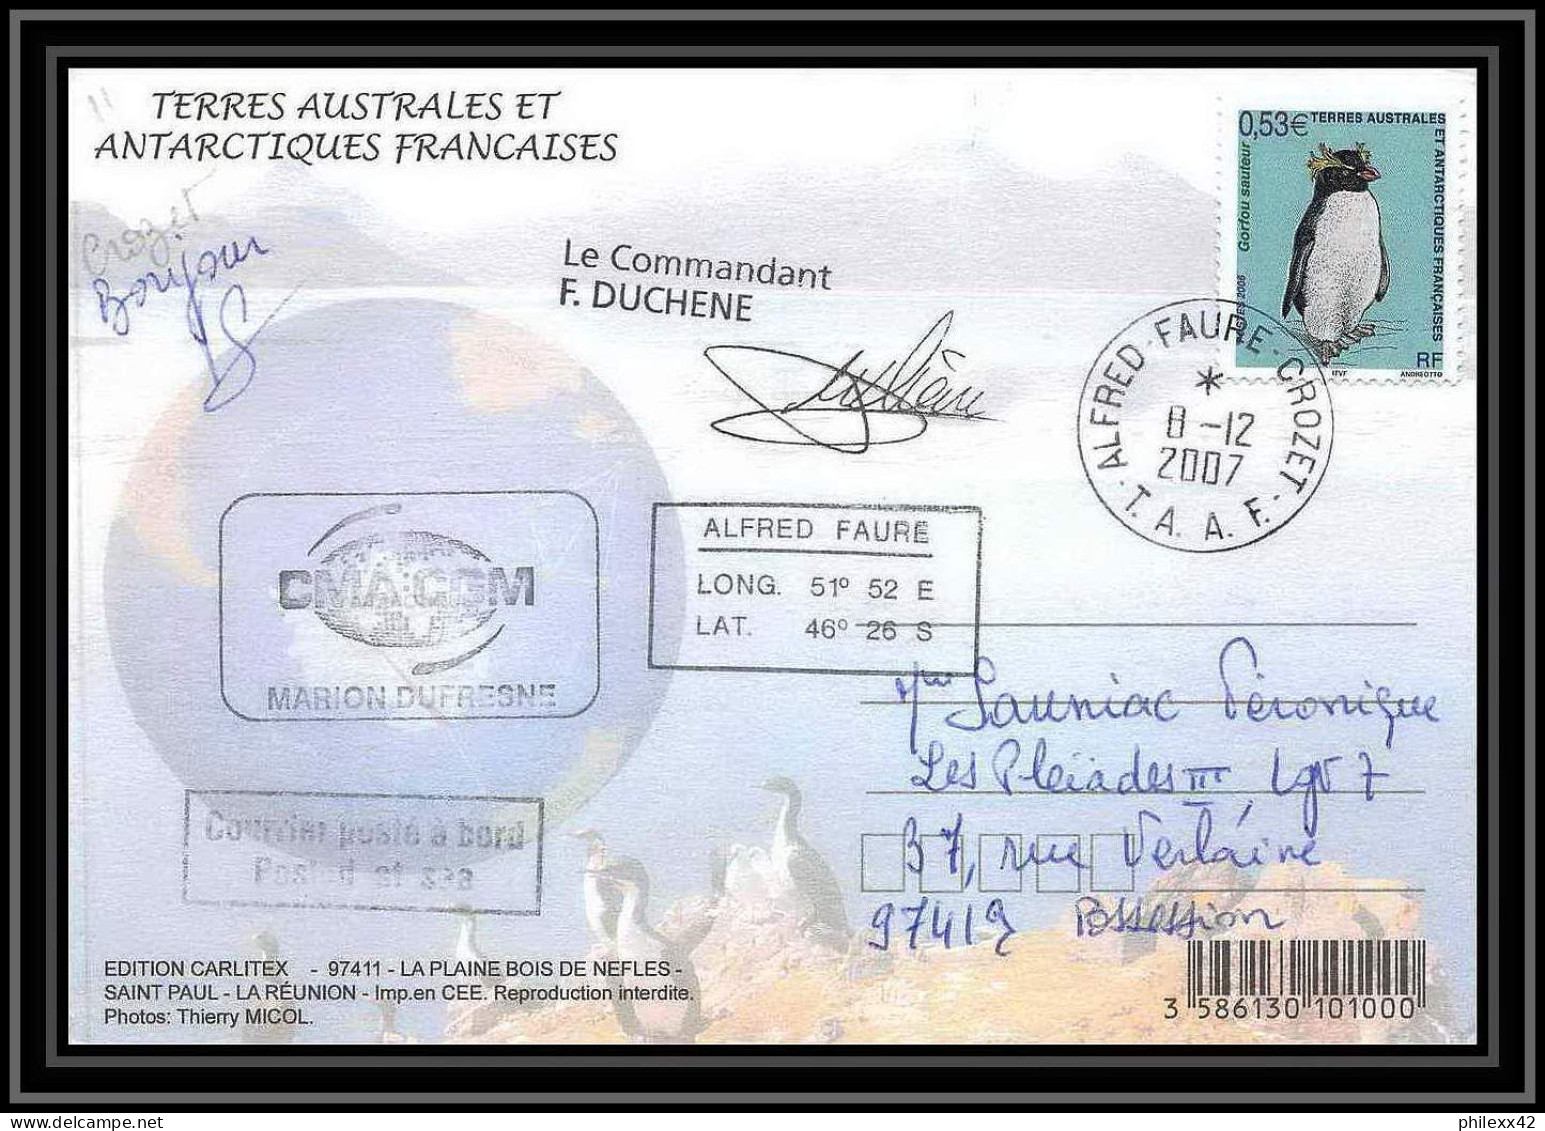 2751 ANTARCTIC Terres Australes (taaf)-carte Postale Dufresne 2 Signé Signed Op 2007/4 N°450 CROZET 11/12/2007 - Antarctische Expedities